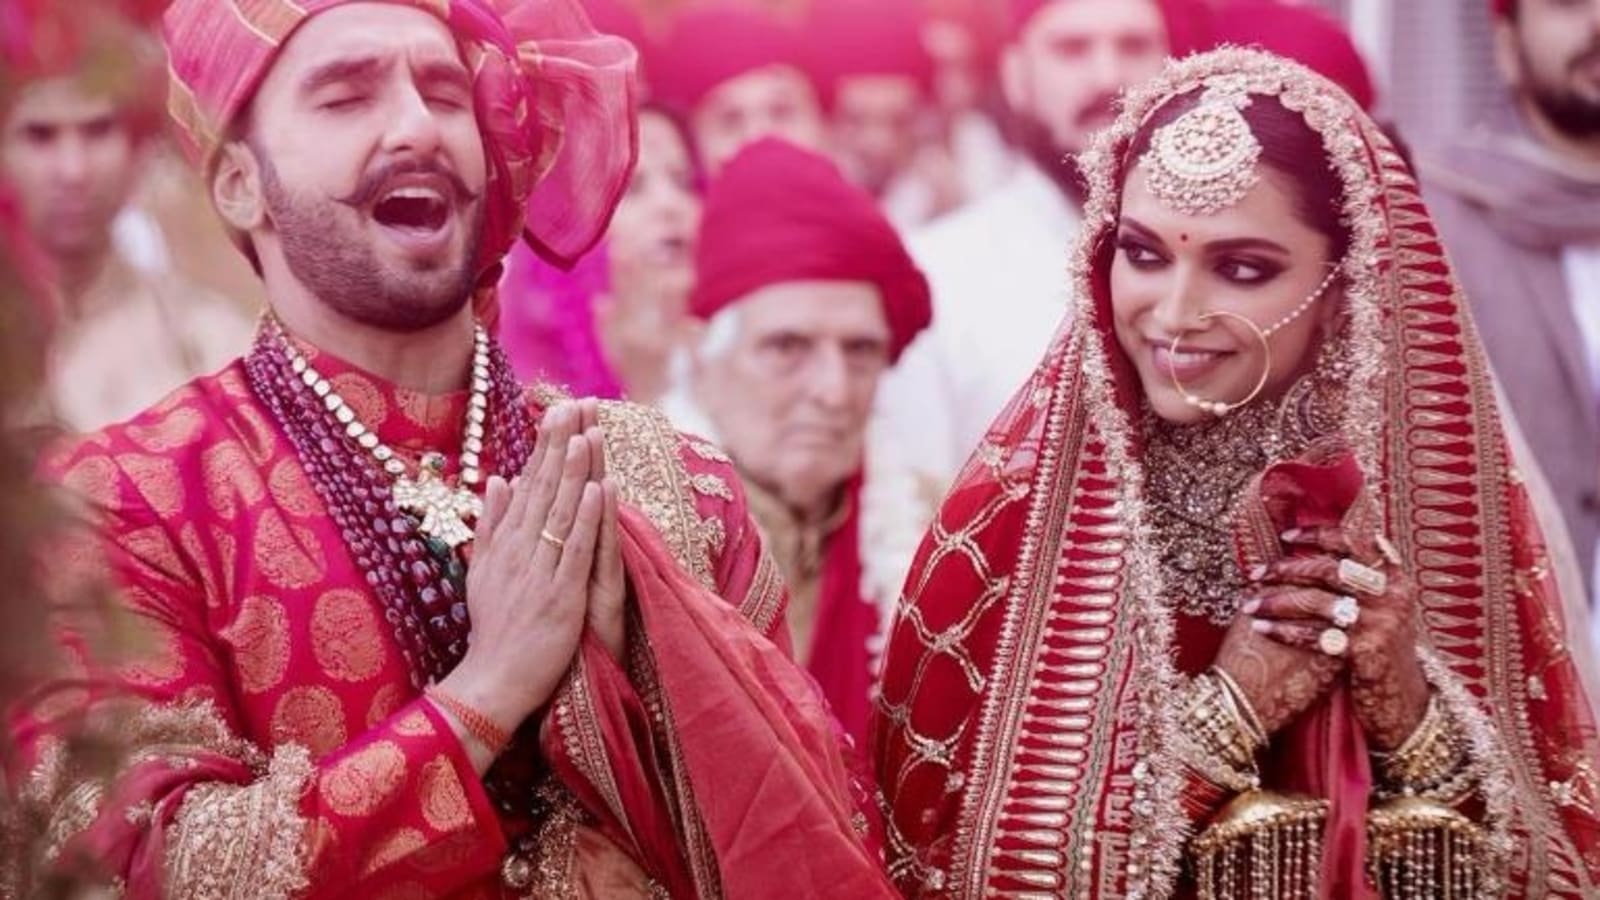 Trouble in Deepika Padukone, Ranveer Singh's marriage?